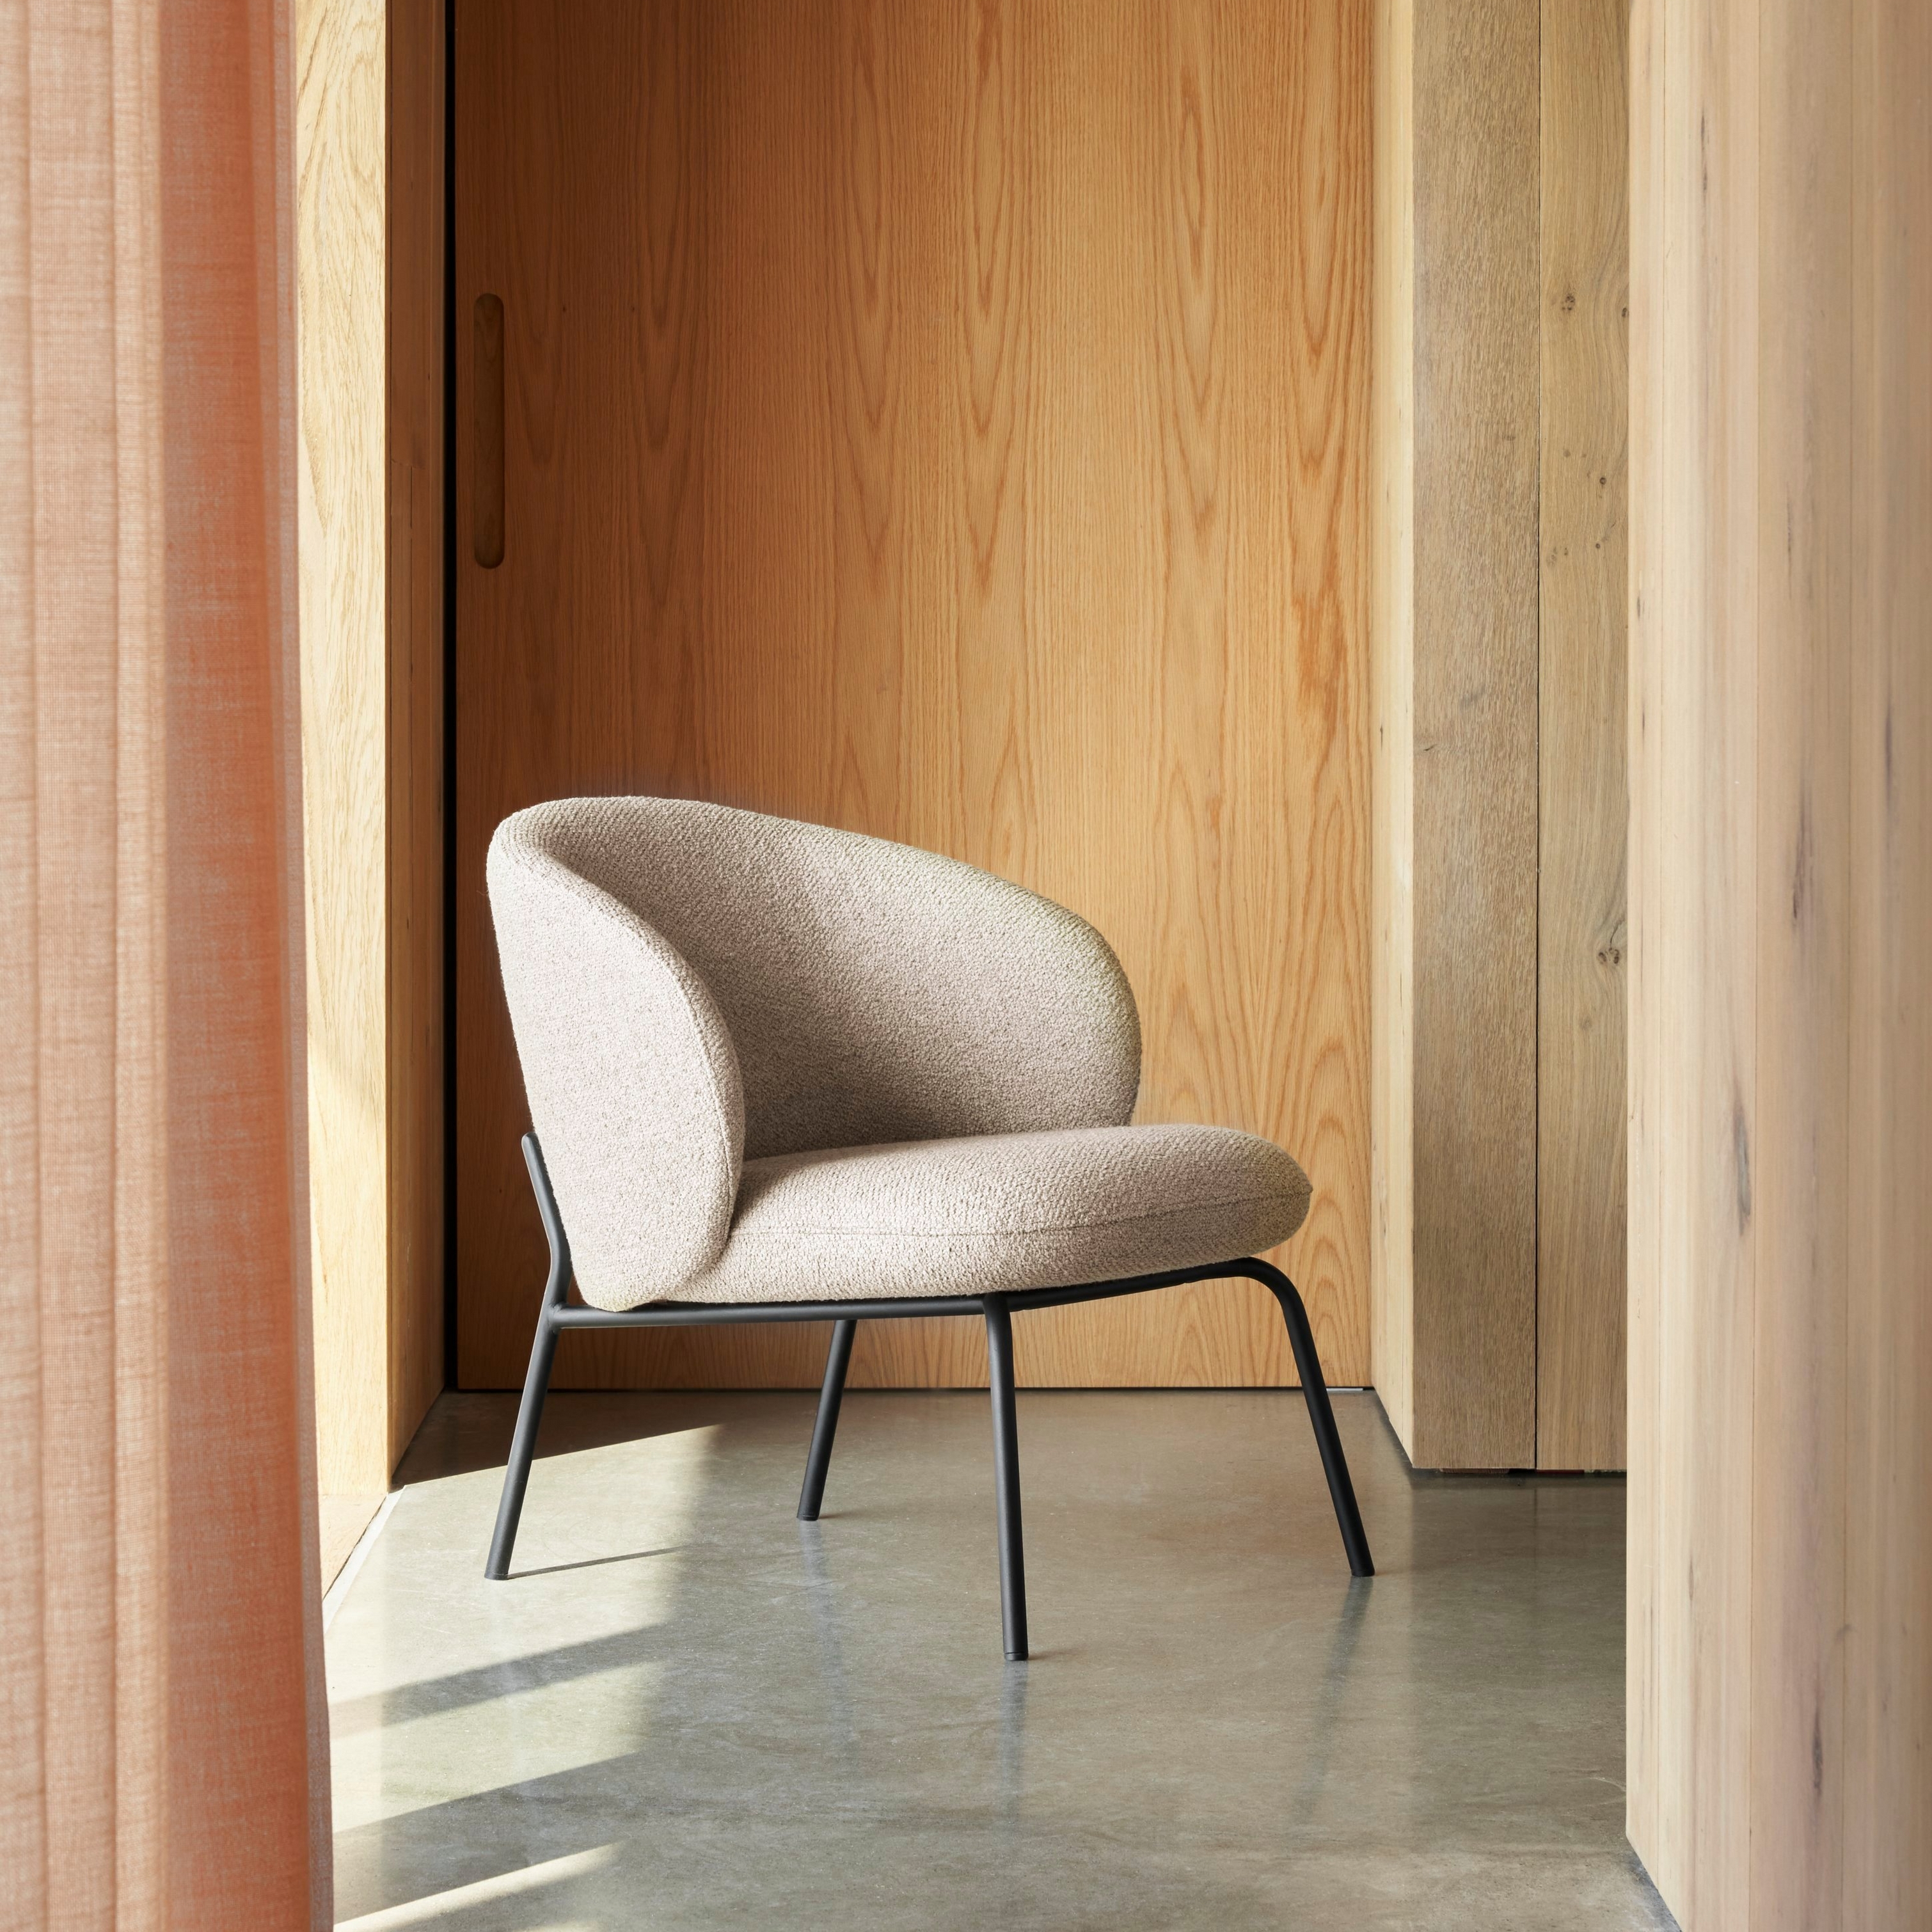 陽光充足的內部裝潢中擺放採用米色襯墊和黑色框架現代感椅子。